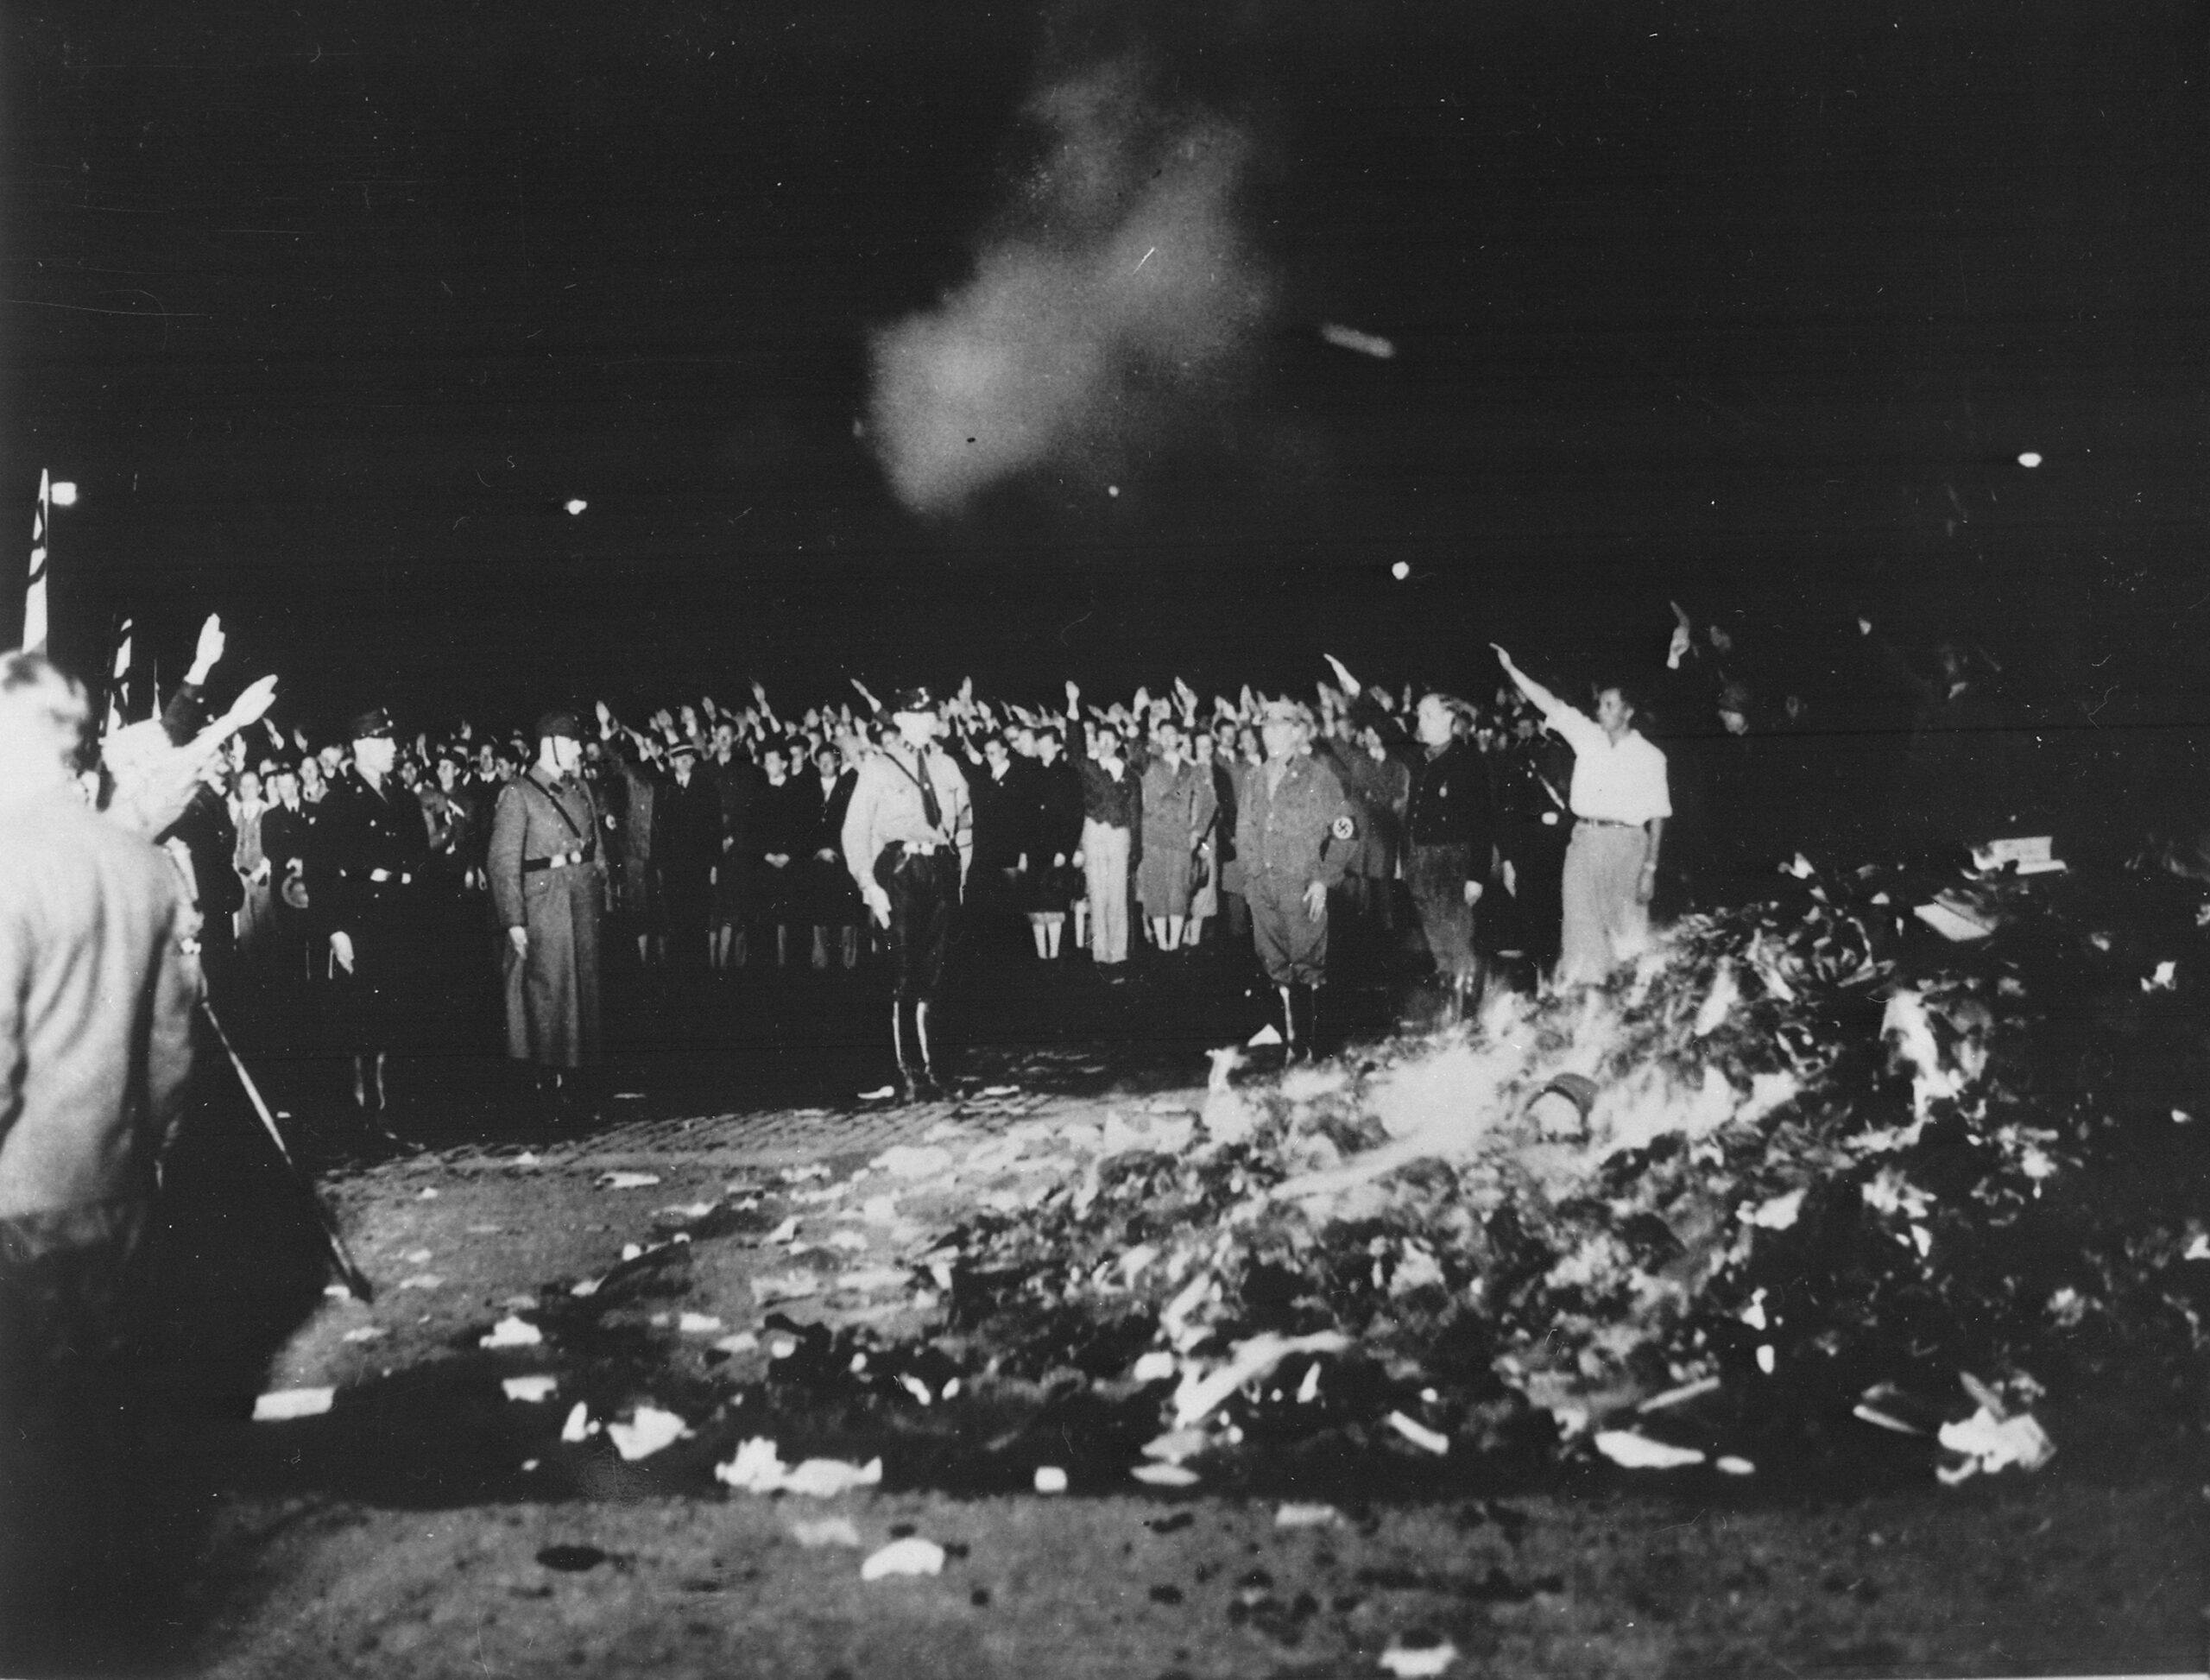 عکس از ویکی‌پدیا: تصویر یکی از مشهورترین کتاب‌سوزی‌های نازی که در آن پژوهش‌ها و کتاب‌های انستیتو سکس برلین نیز سوزانده شد